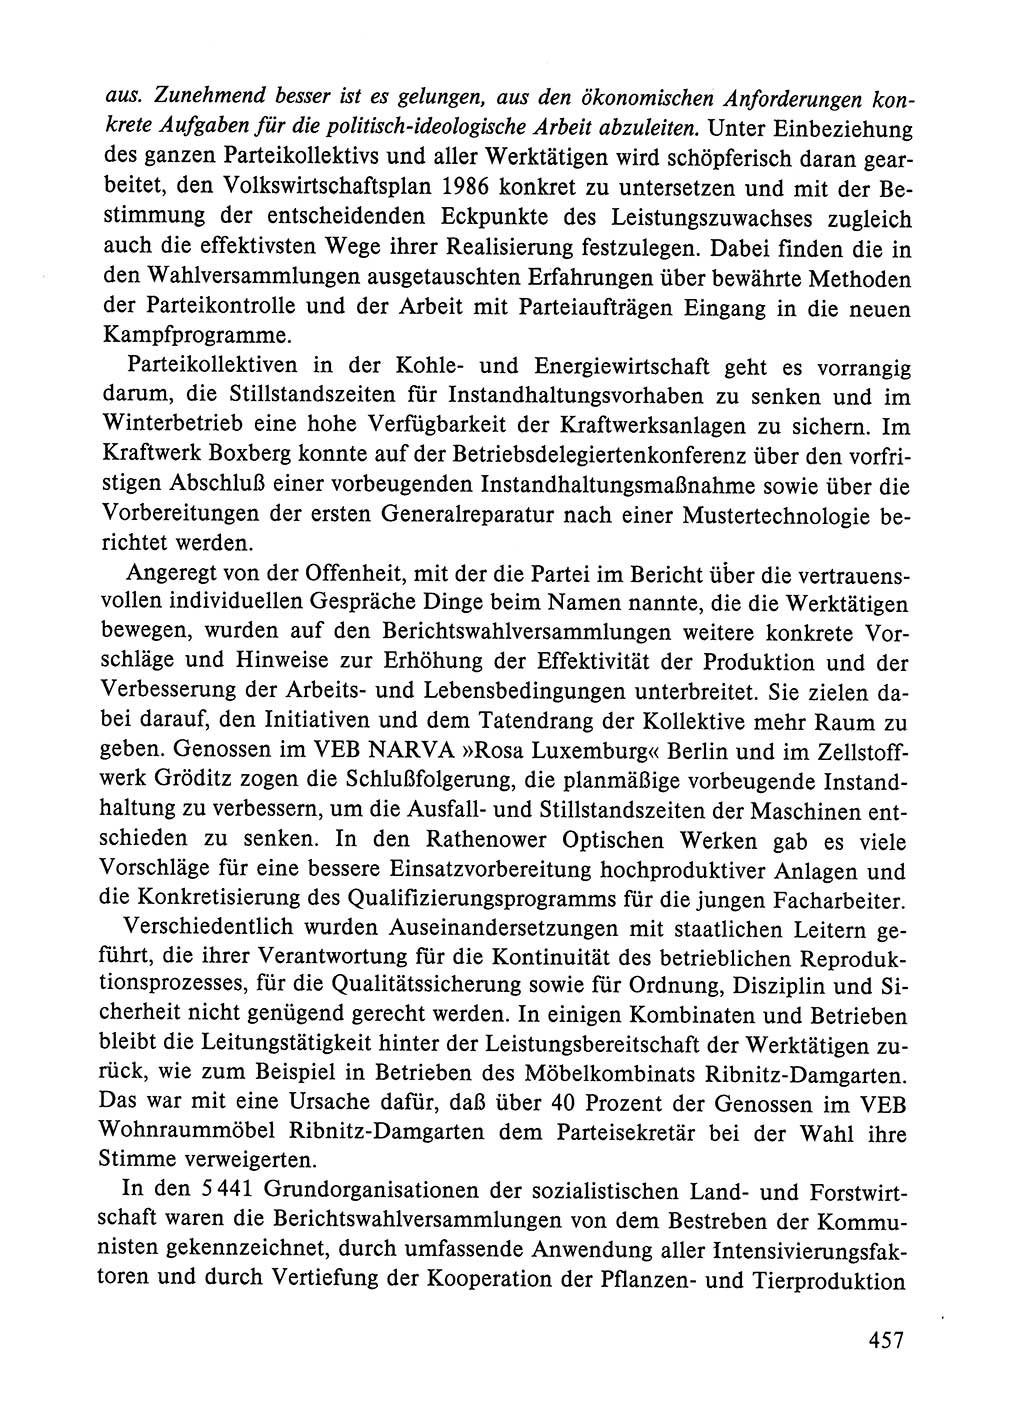 Dokumente der Sozialistischen Einheitspartei Deutschlands (SED) [Deutsche Demokratische Republik (DDR)] 1984-1985, Seite 457 (Dok. SED DDR 1984-1985, S. 457)